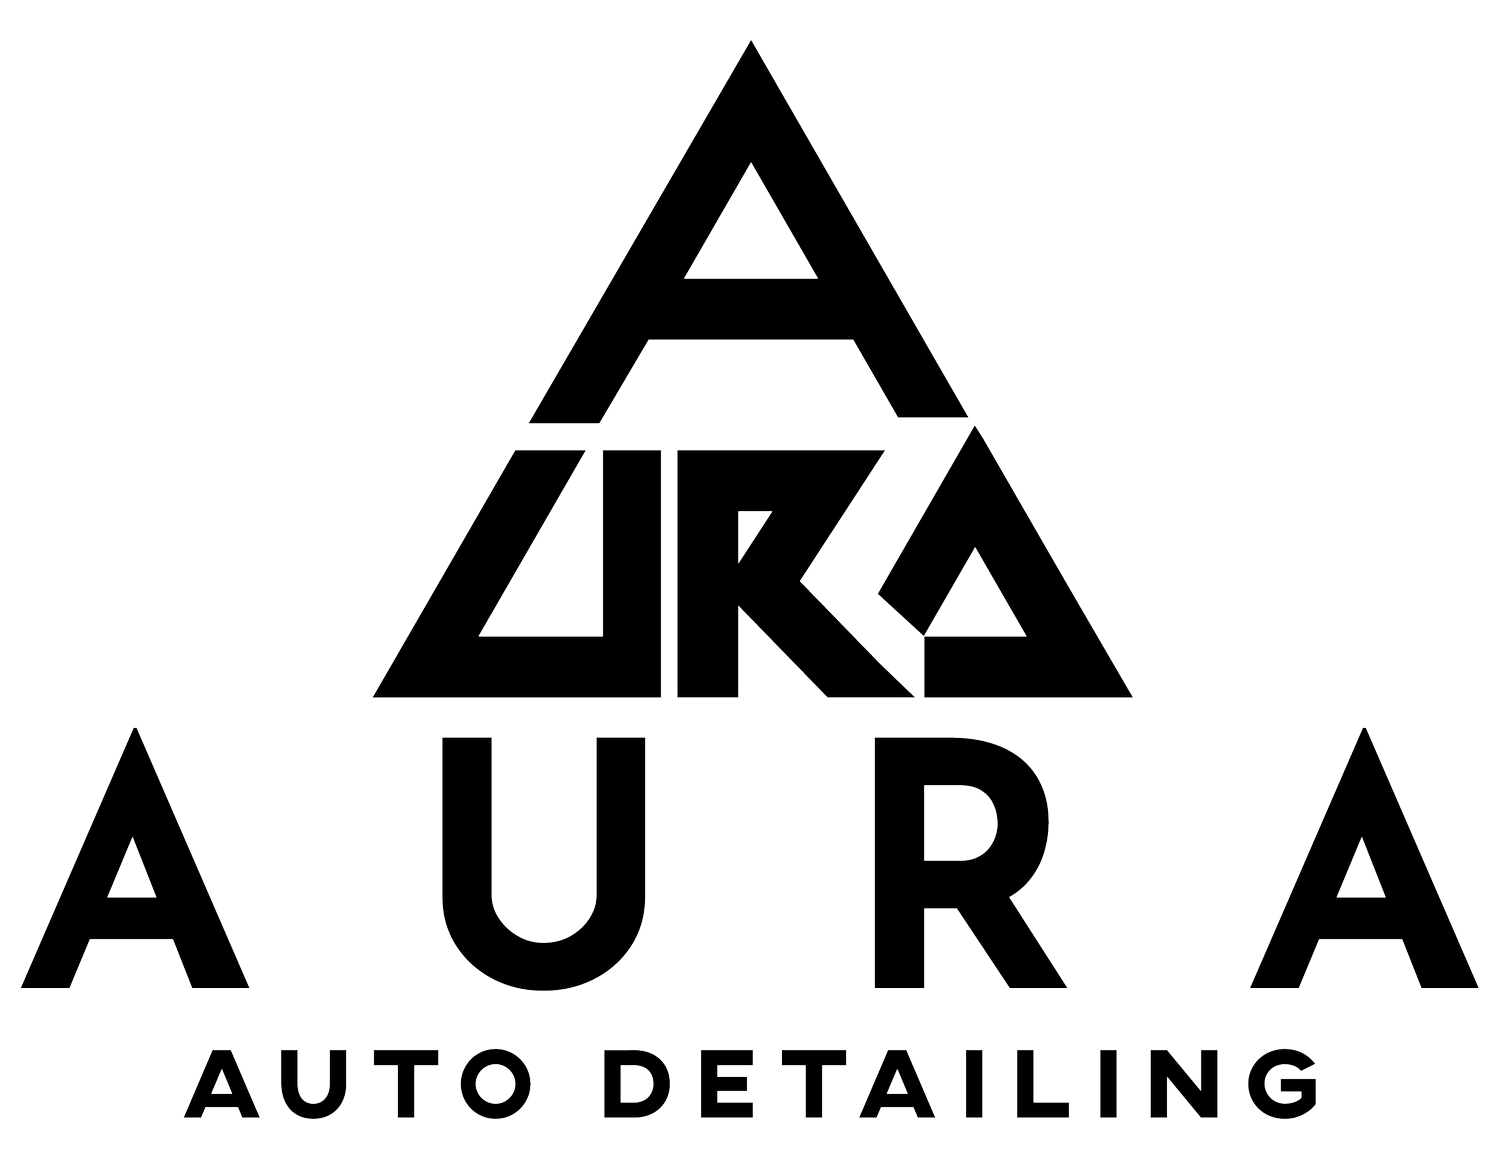 AURA Auto Detailing